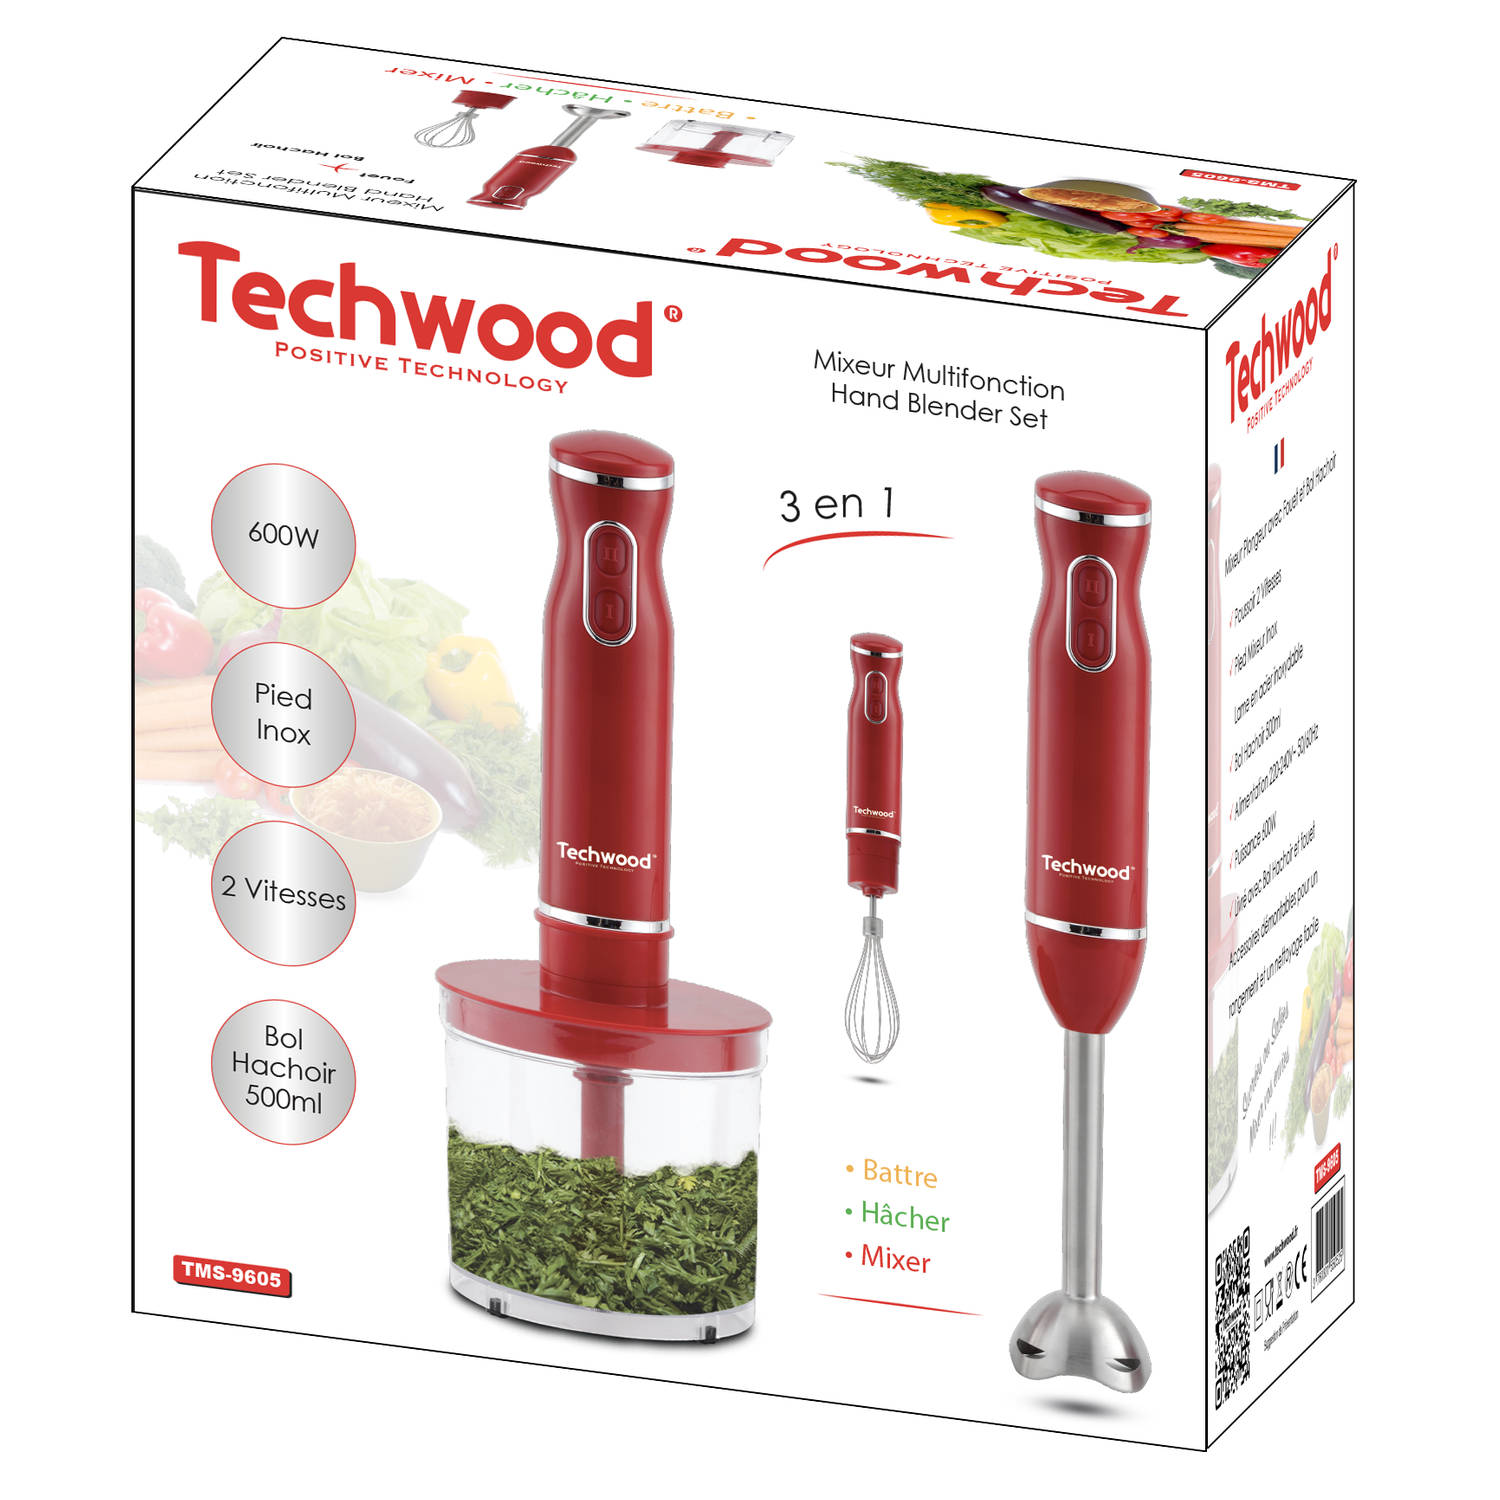 Блендер комплект. Techwood миксер multifonction hand Blender Set TMS 8366. Блендер красный. Блендер игрушка красный.